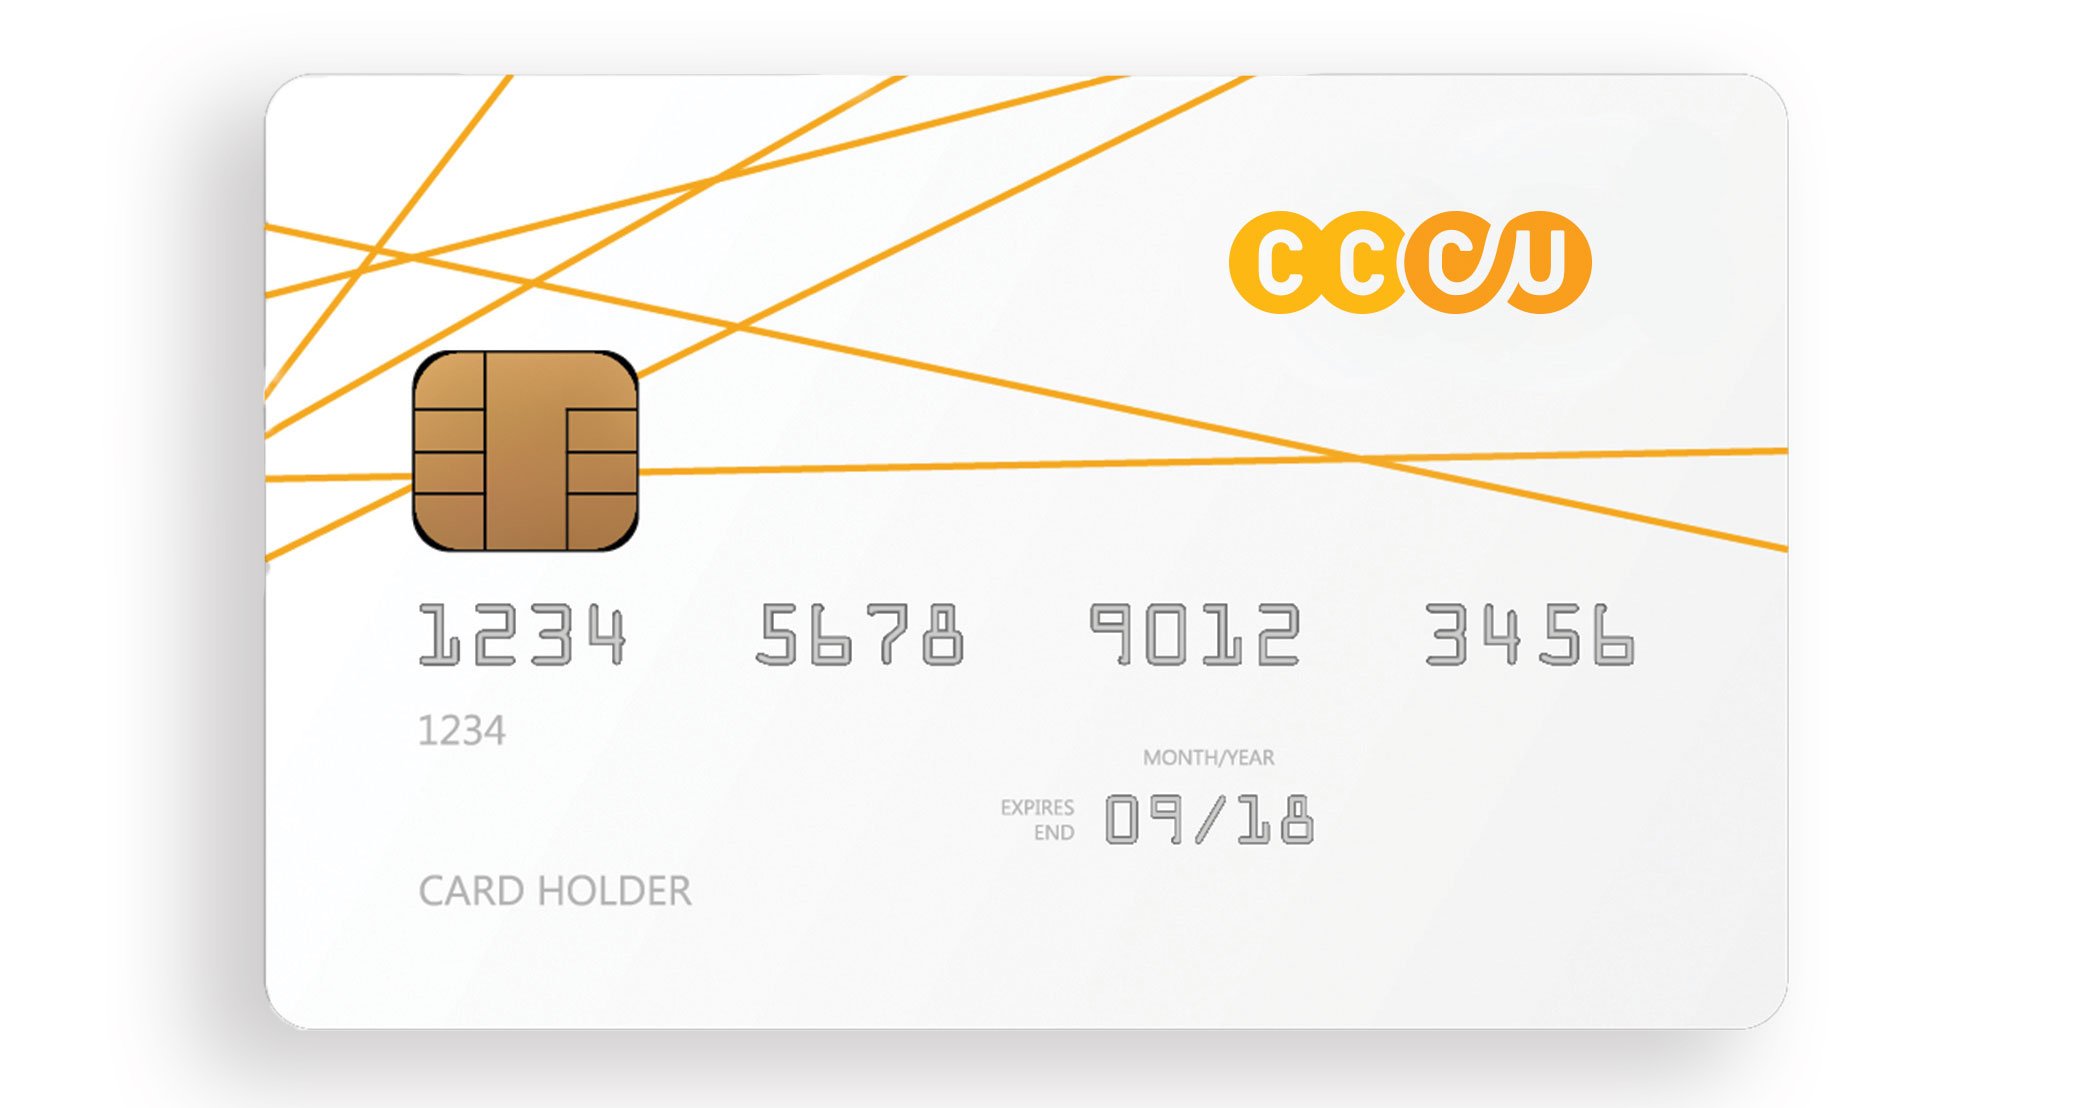 Photo of the CCCU debit card.